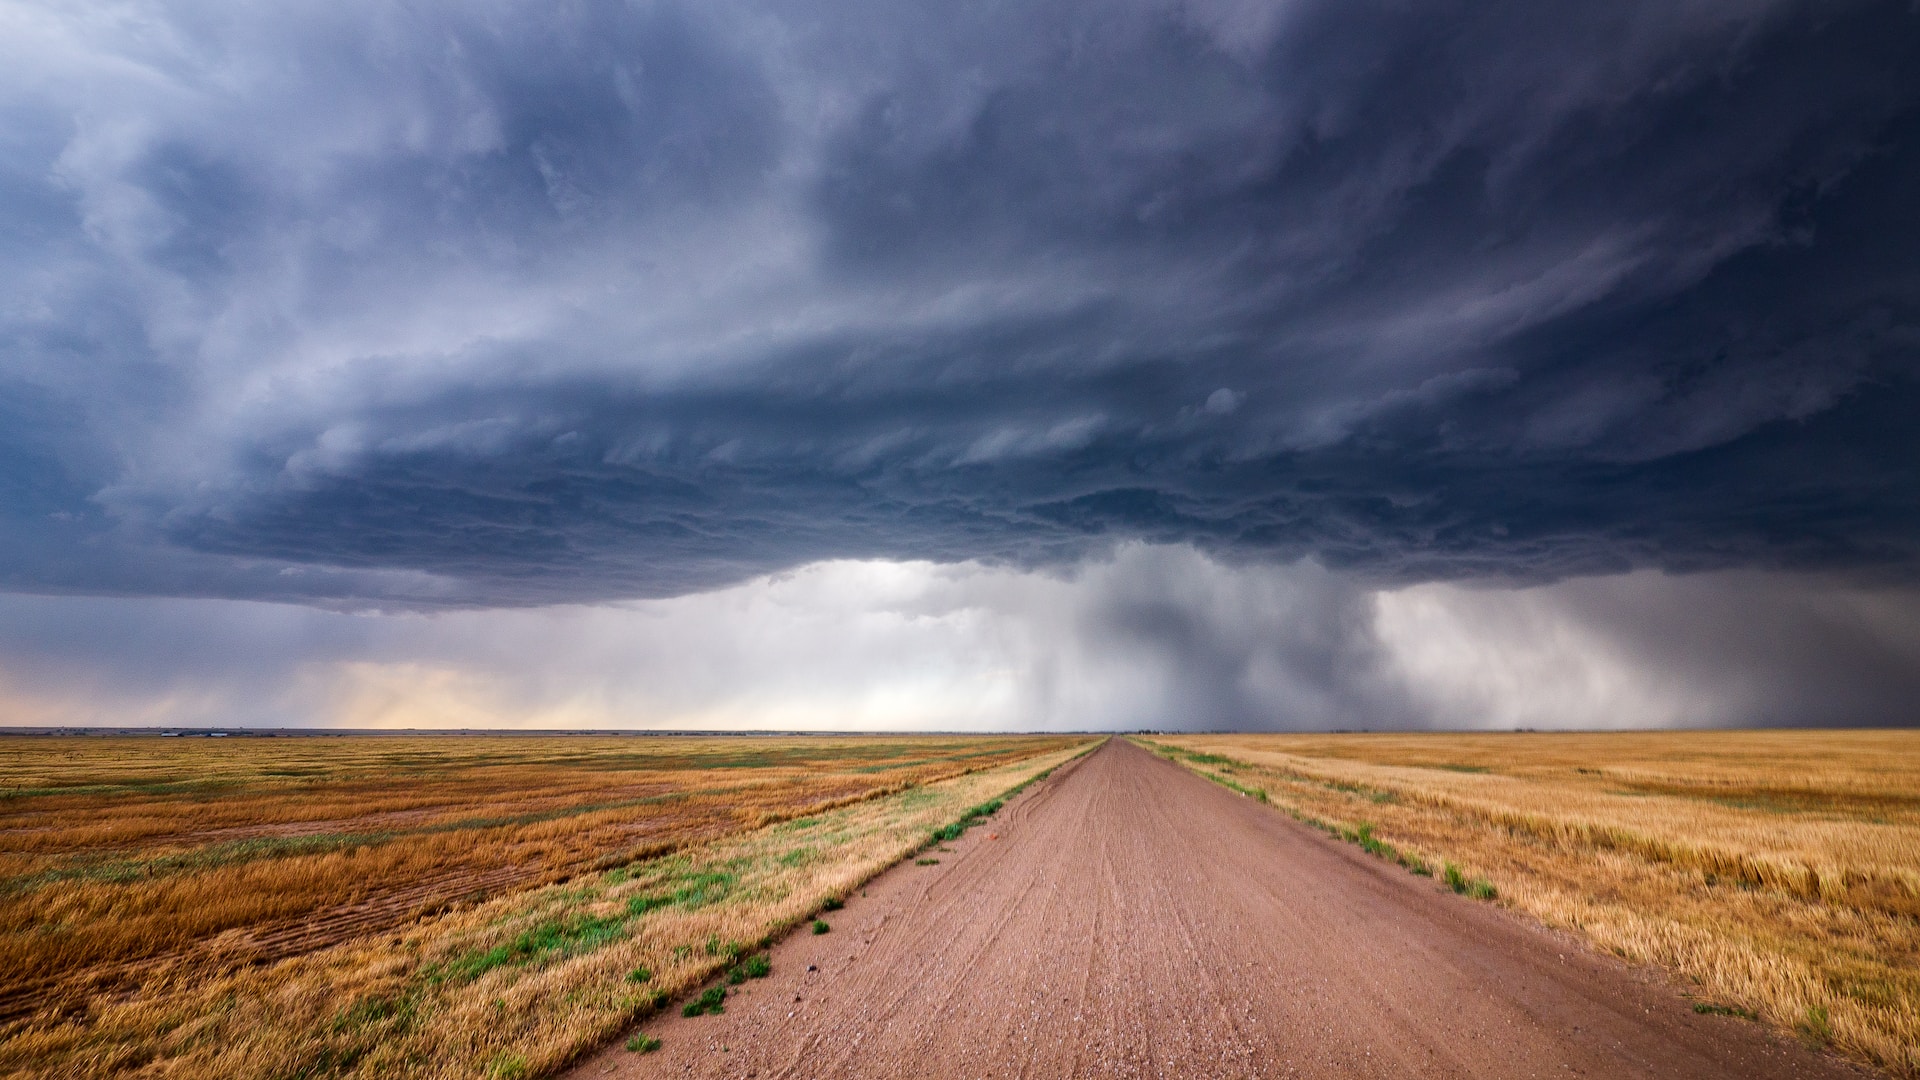 A gathering storm over Kansas. 